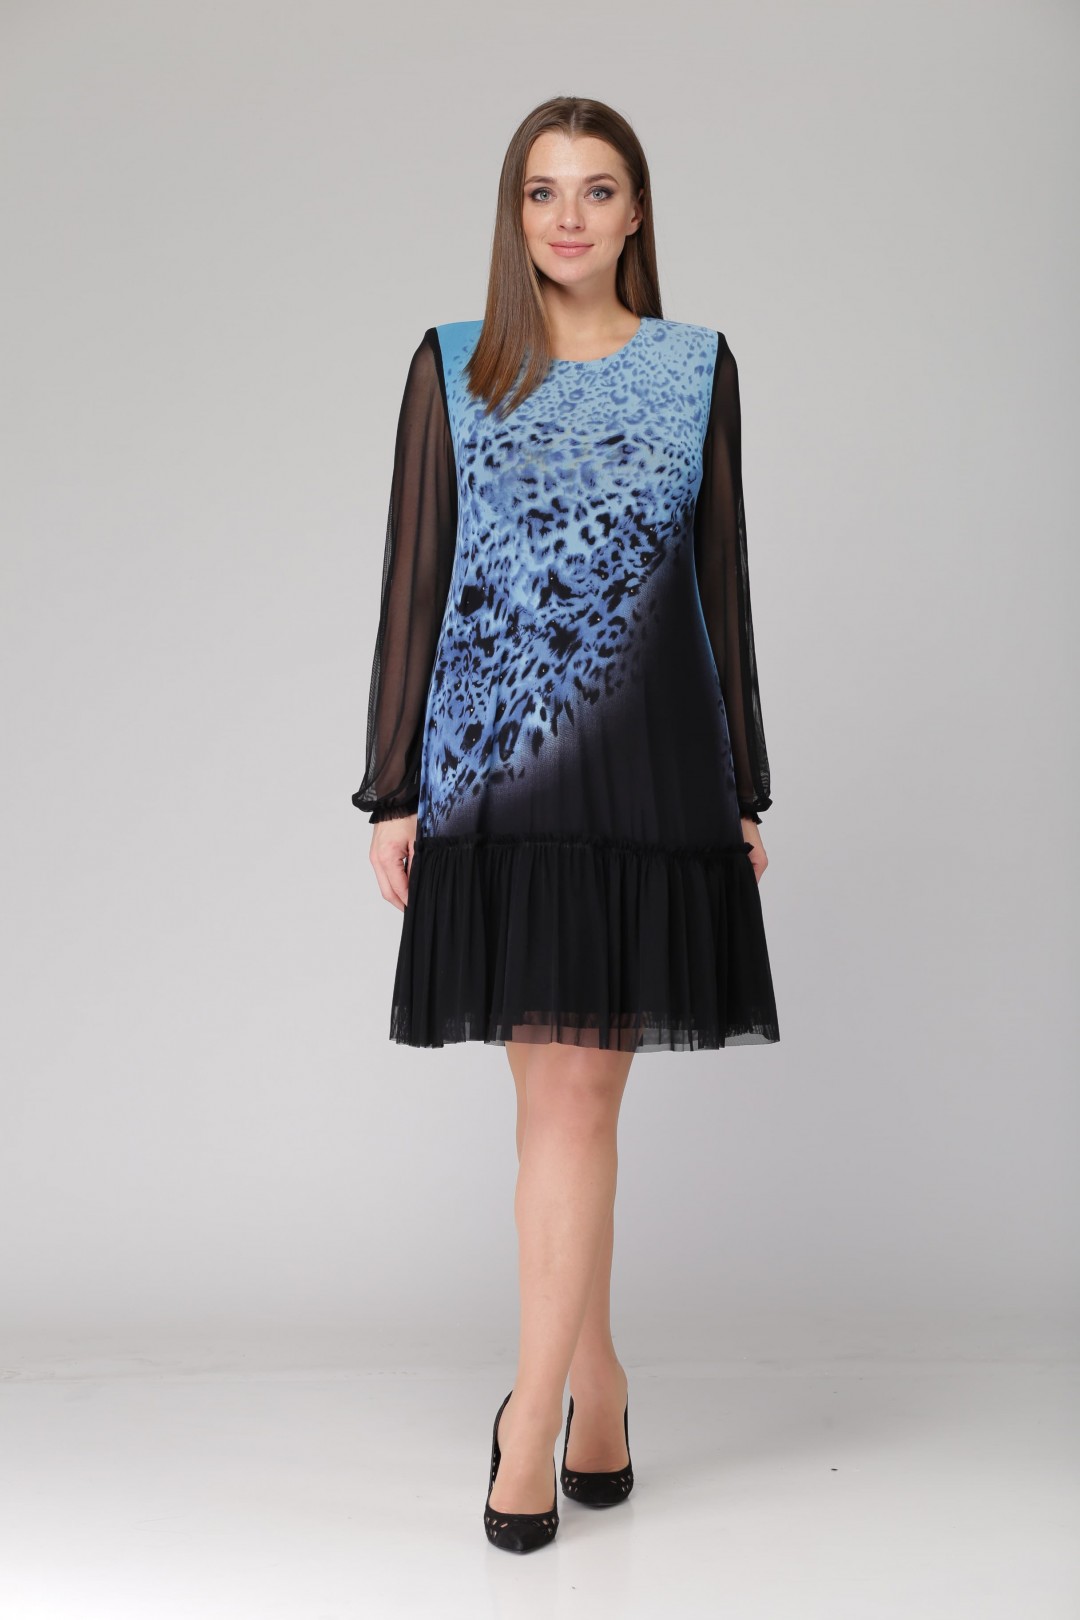 Платье Светлана-Стиль 1054 голубой+черный